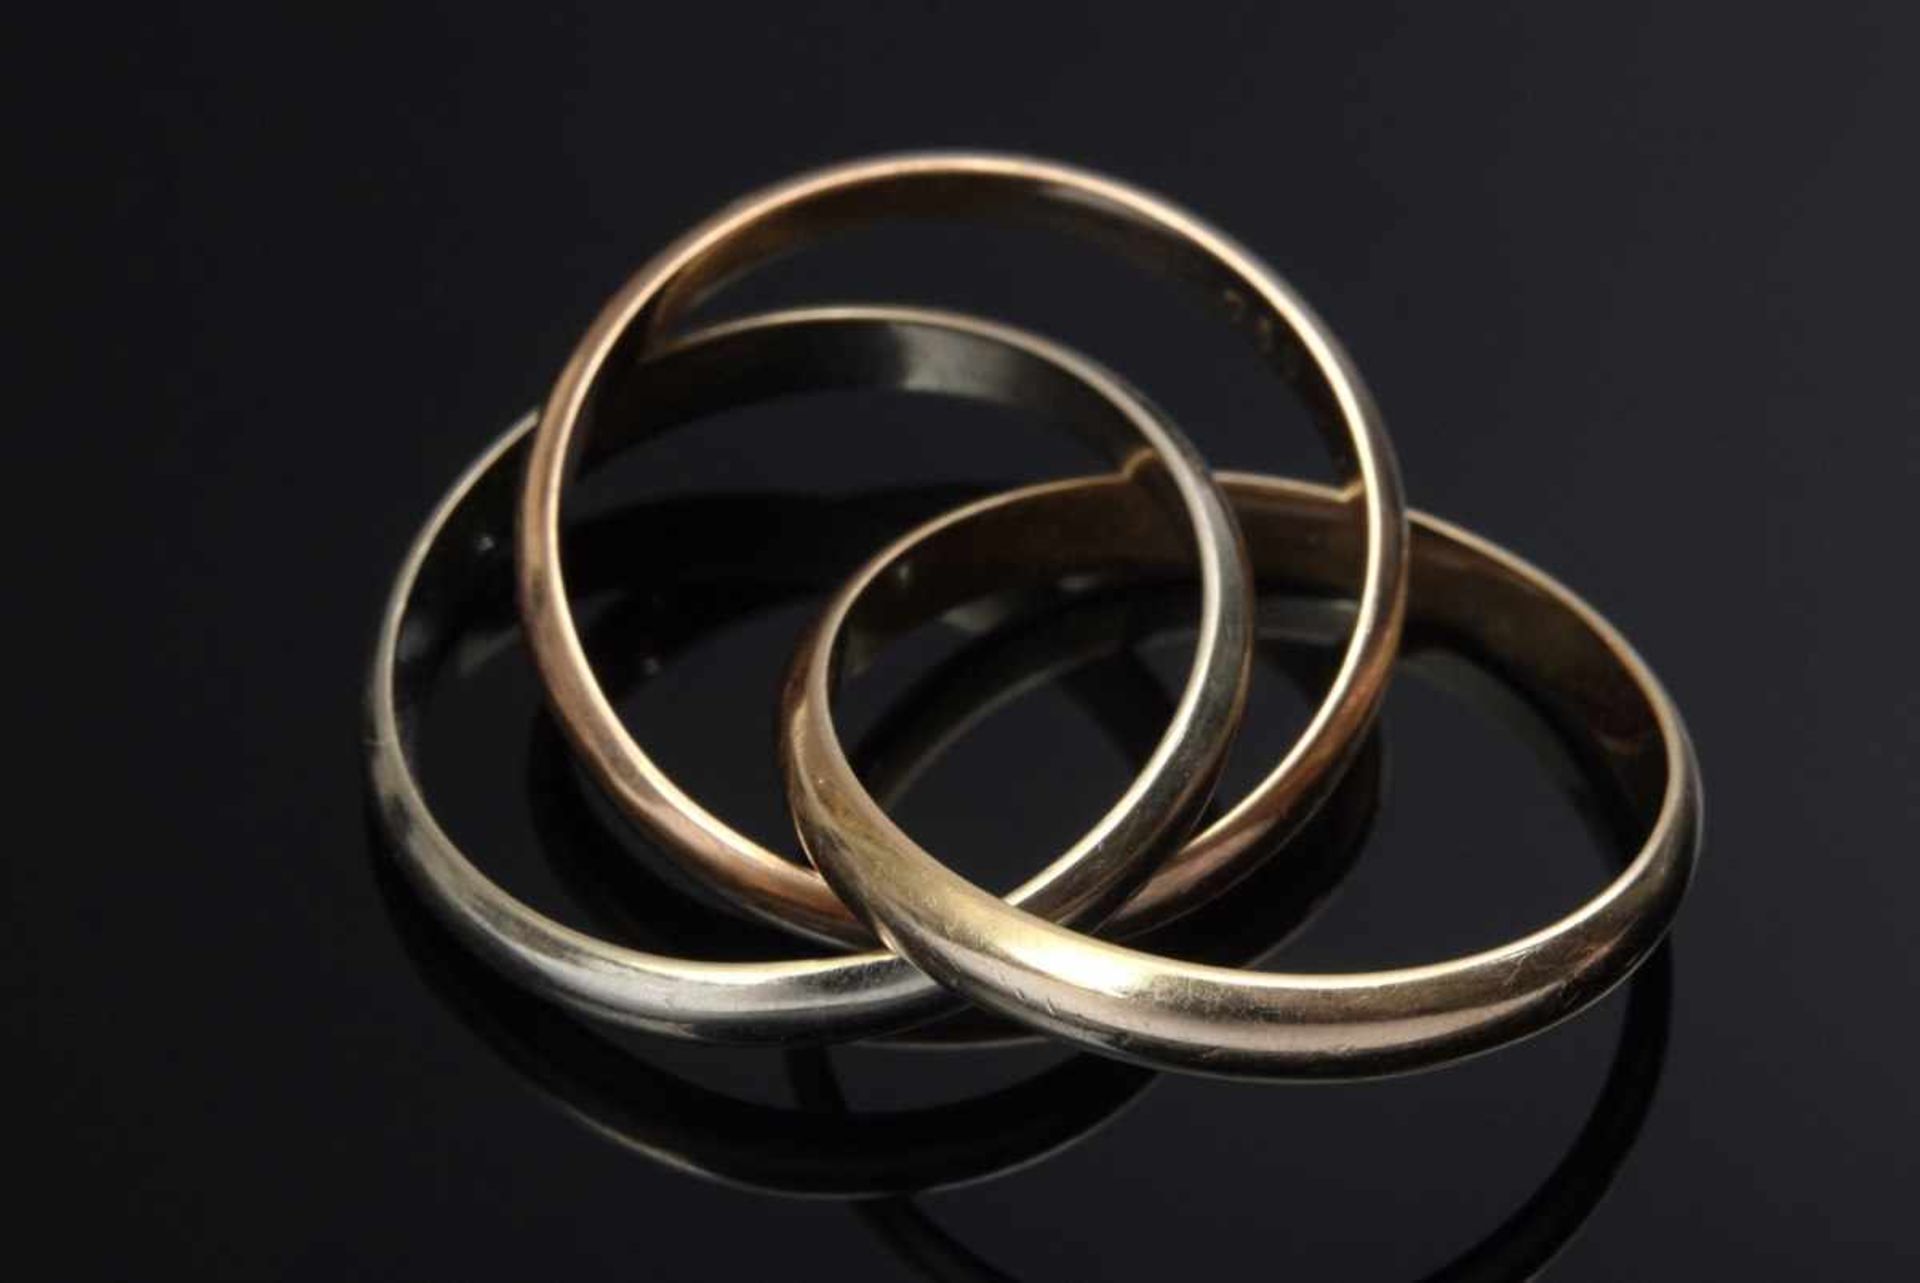 GG/RG/WG 750 ring, 5.8g, size 51, wear marksGG/RG/WG 750 Ring, 5,8g, Gr. 51, Tragespuren - Bild 2 aus 2